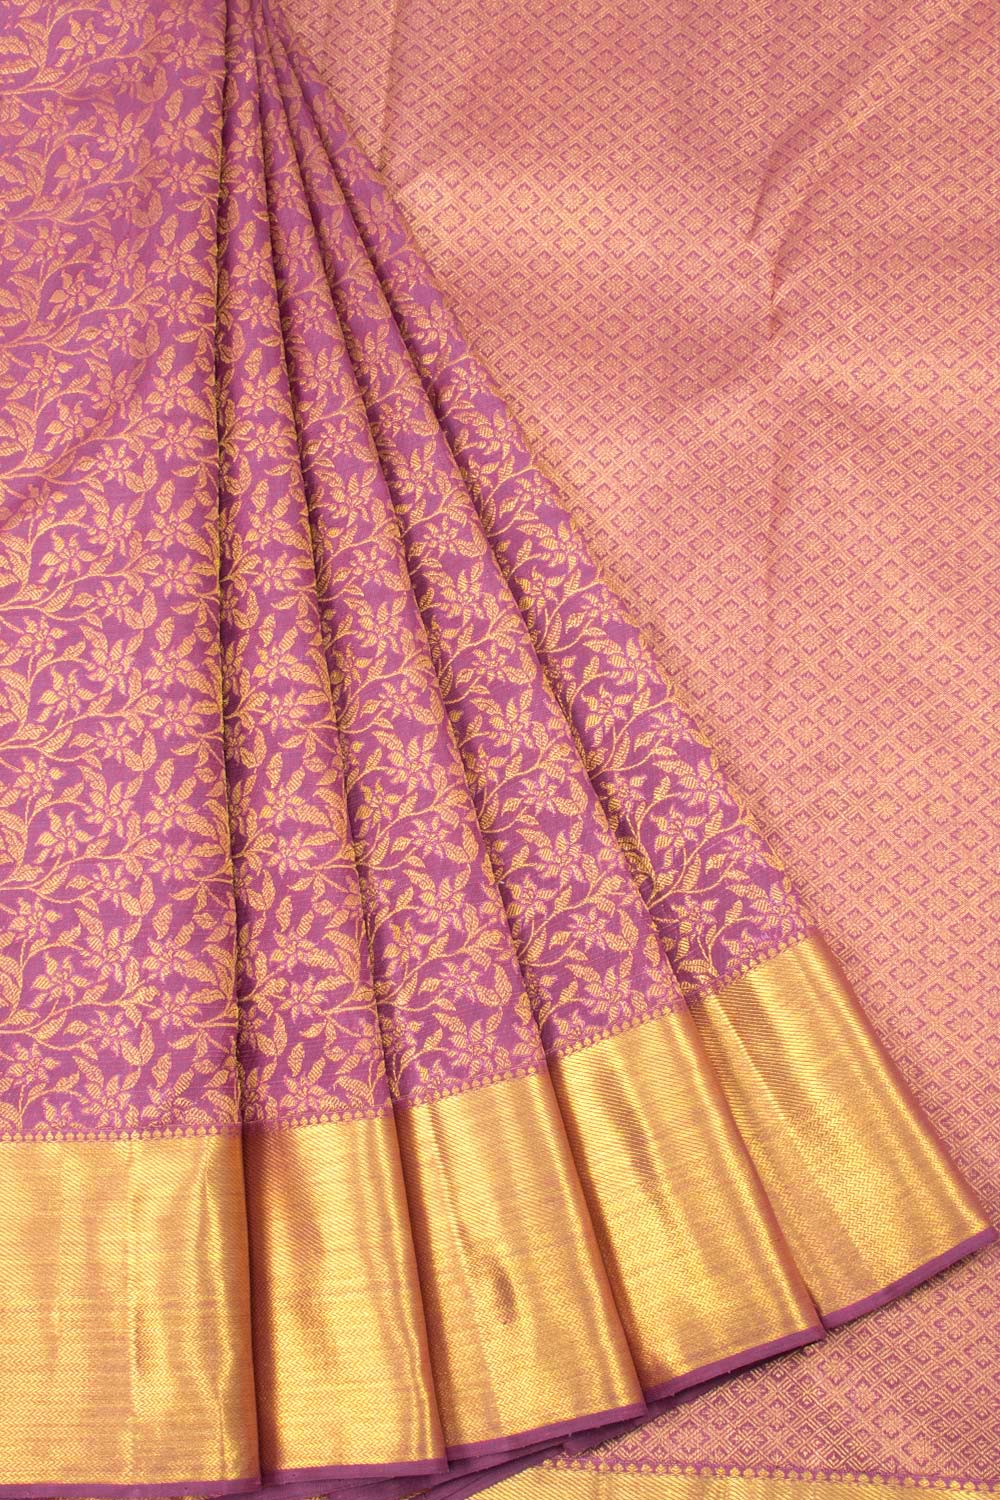 Kanchipuram Silk Sarees Shop in Chennai | Bridal Kanchipuram Sarees - House  of … | New saree blouse designs, Saree blouse designs latest, Traditional  blouse designs